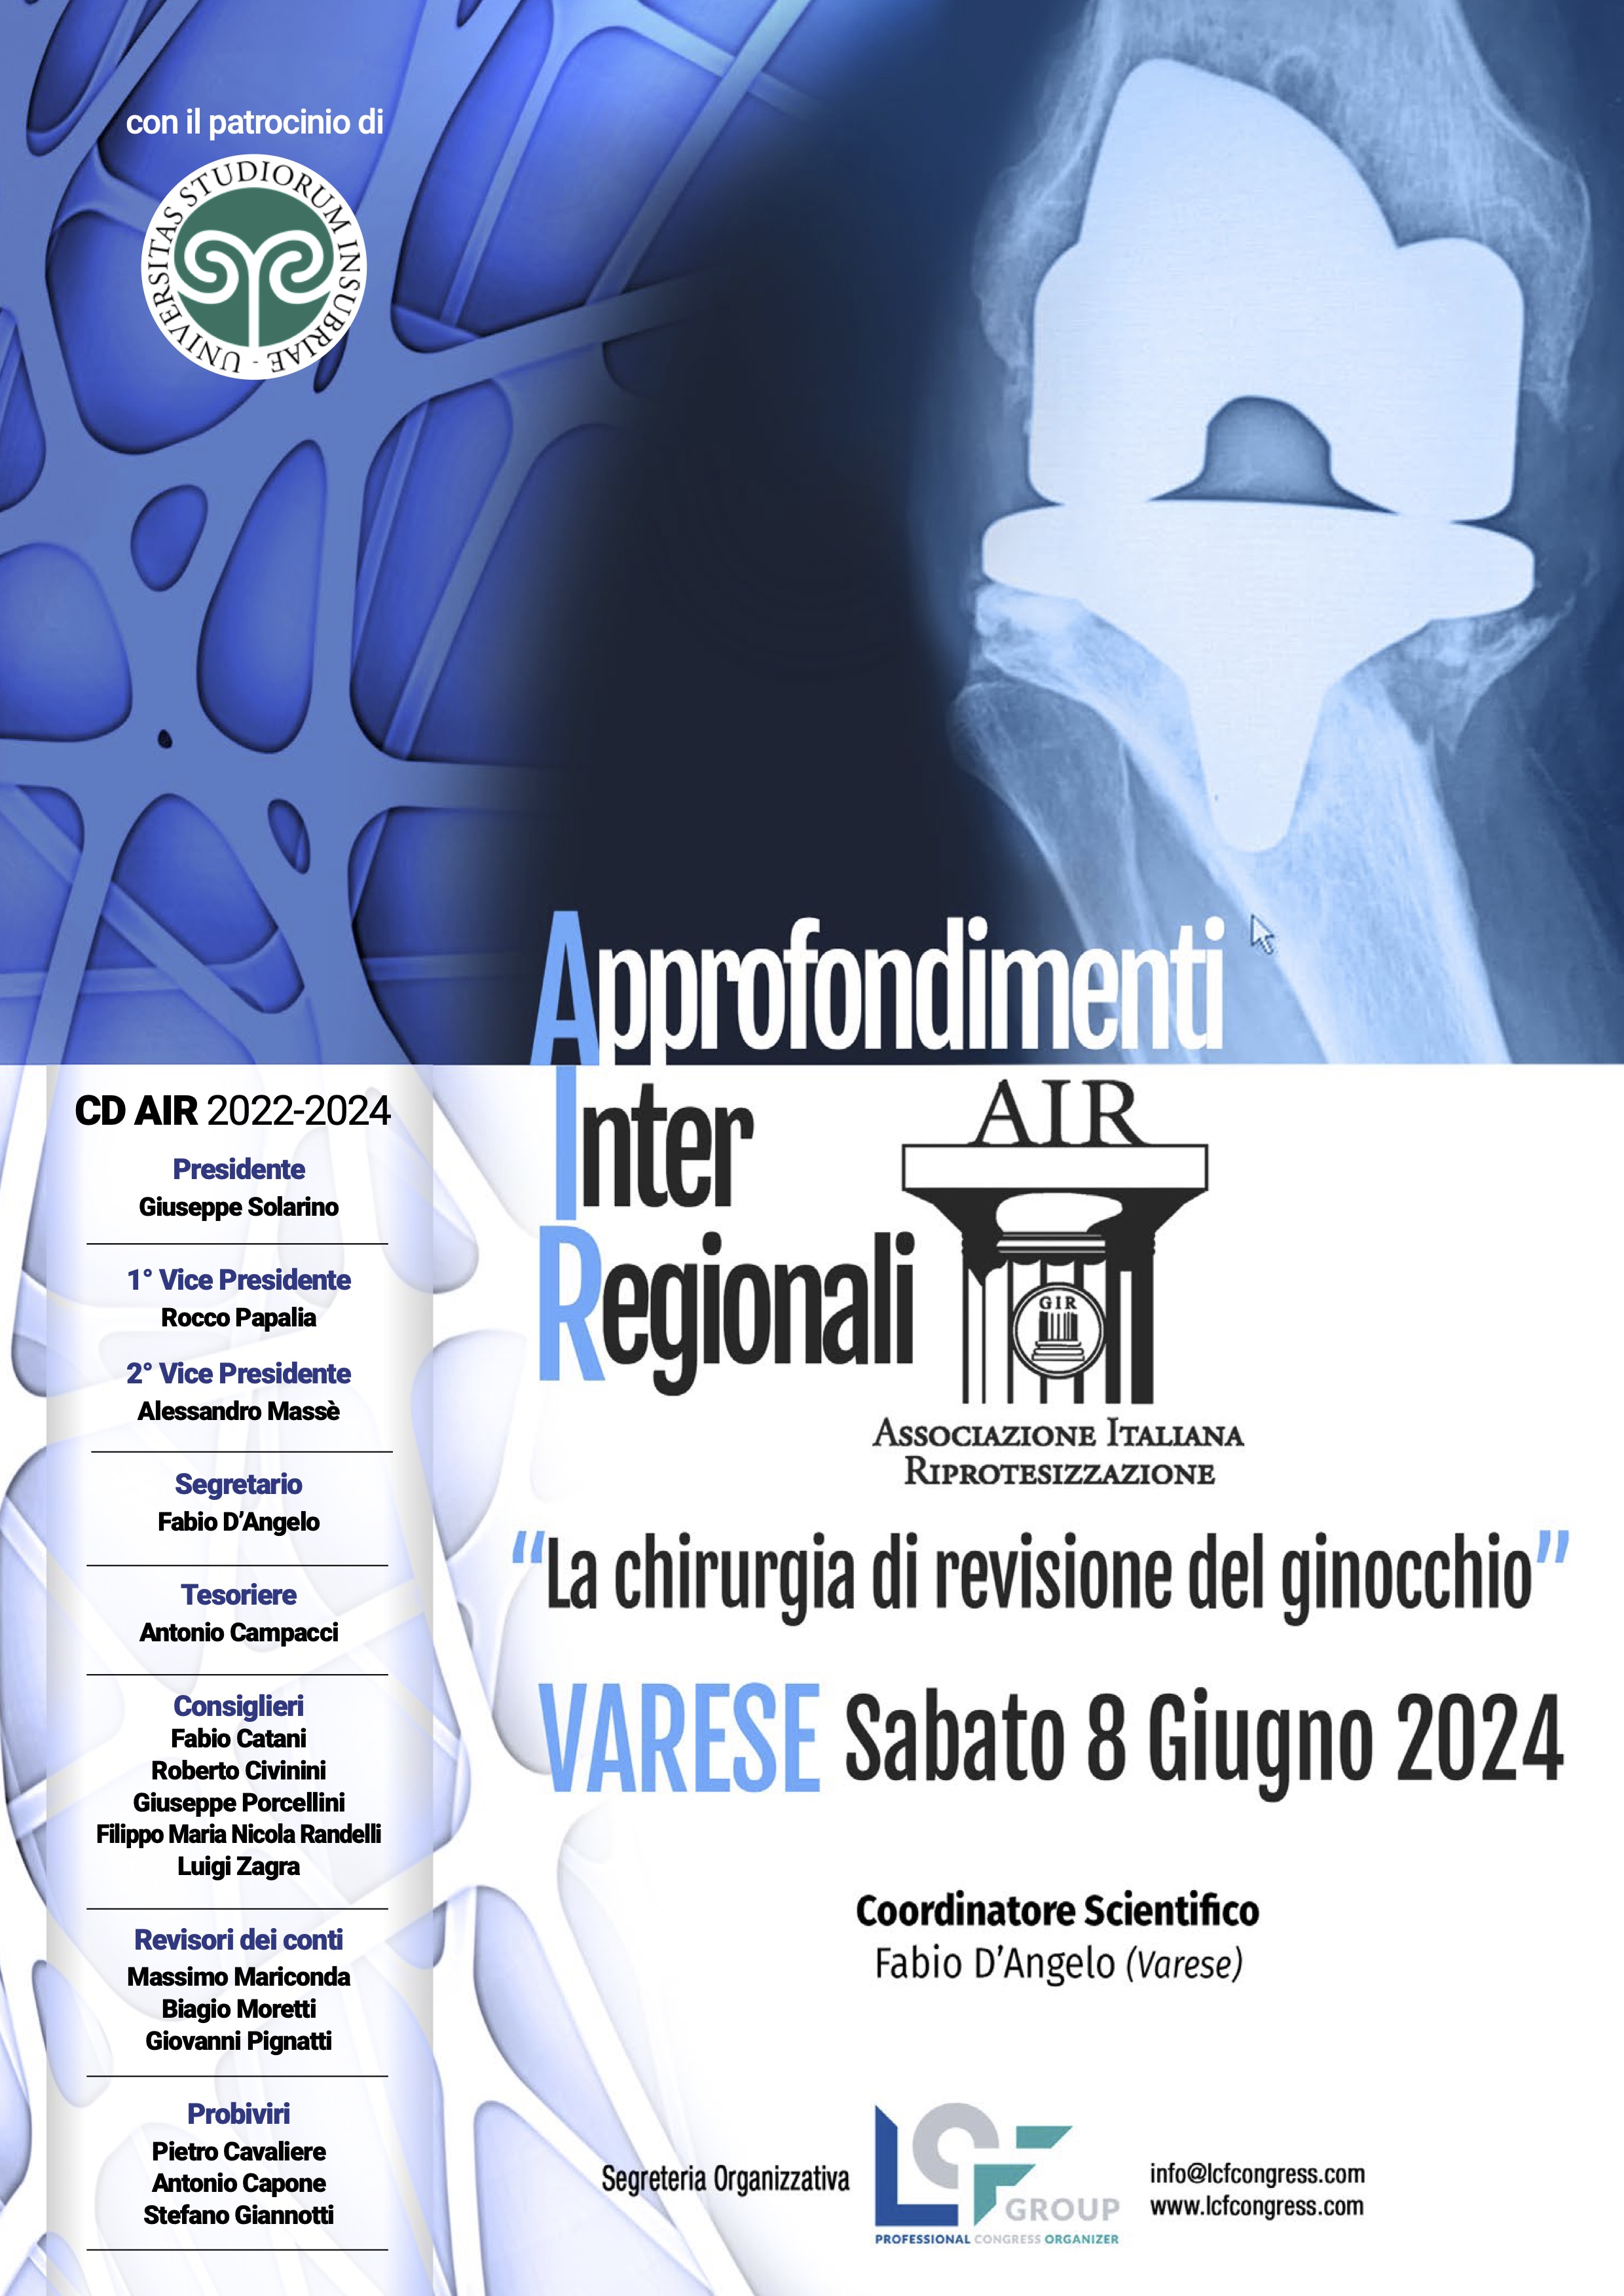 Approfondimenti Inter Regionali A.I.R. Varese
La chirurgia di revisione del ginocchio